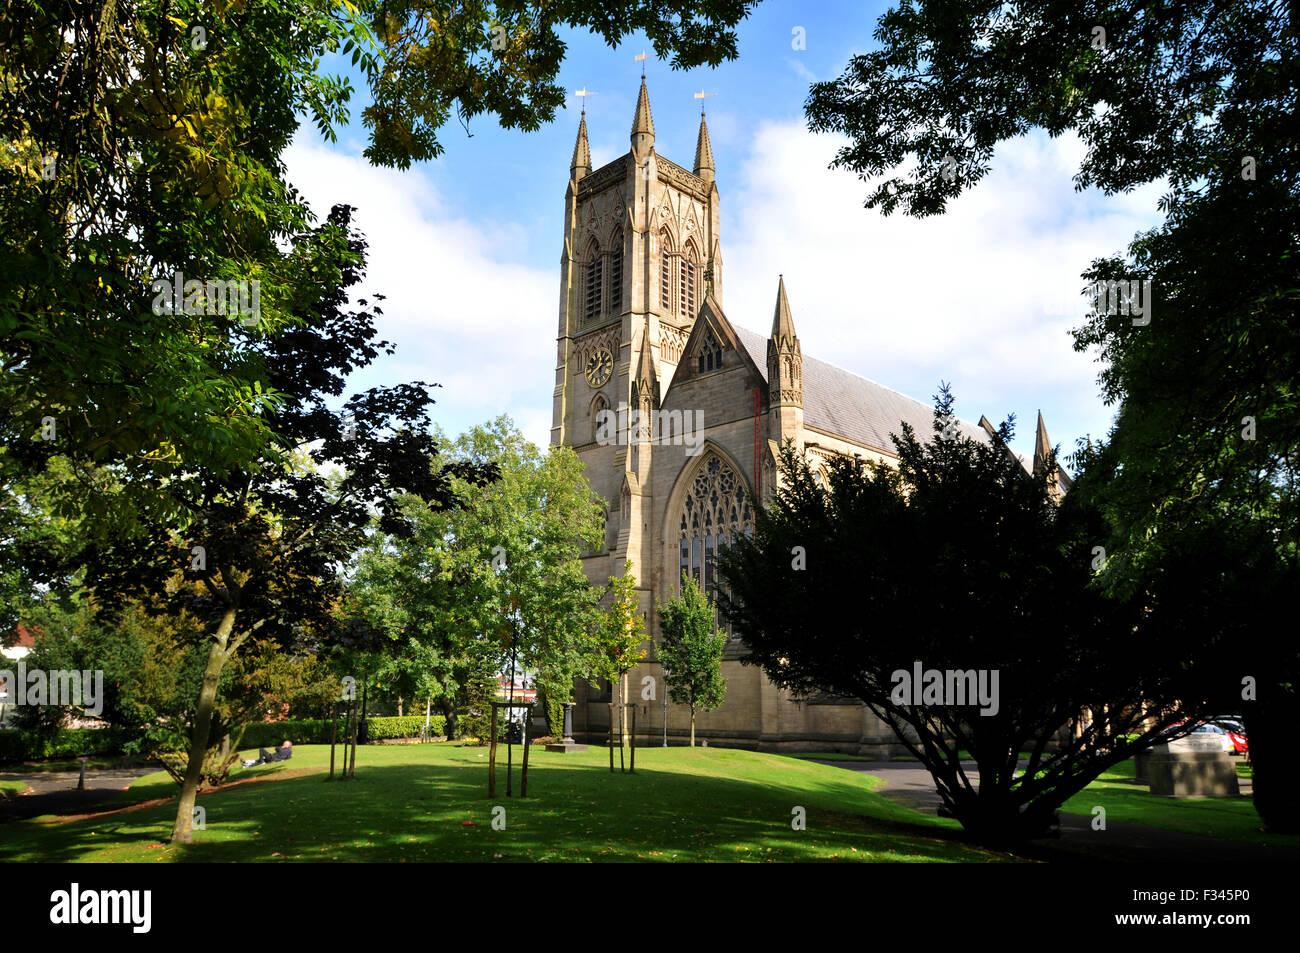 Bolton Chiesa Parrocchiale, Bolton, Inghilterra. Foto di Paolo Heyes, Martedì 29 Settembre, 2015 Foto Stock